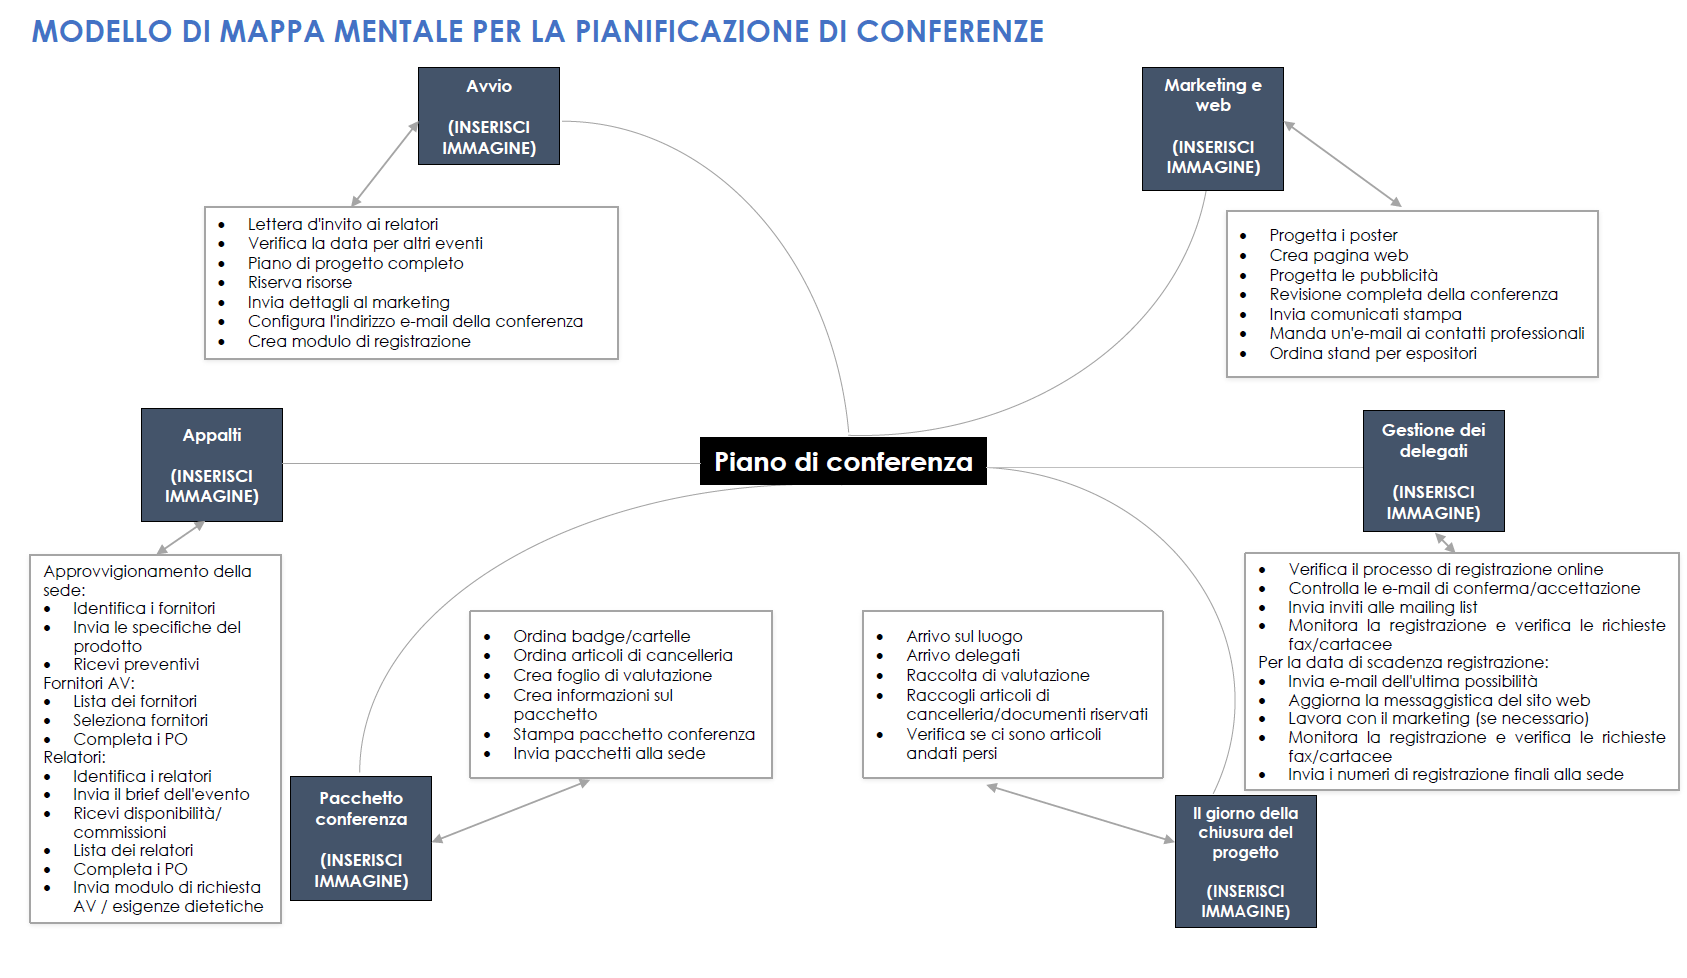  modello di mappa mentale per la pianificazione delle conferenze